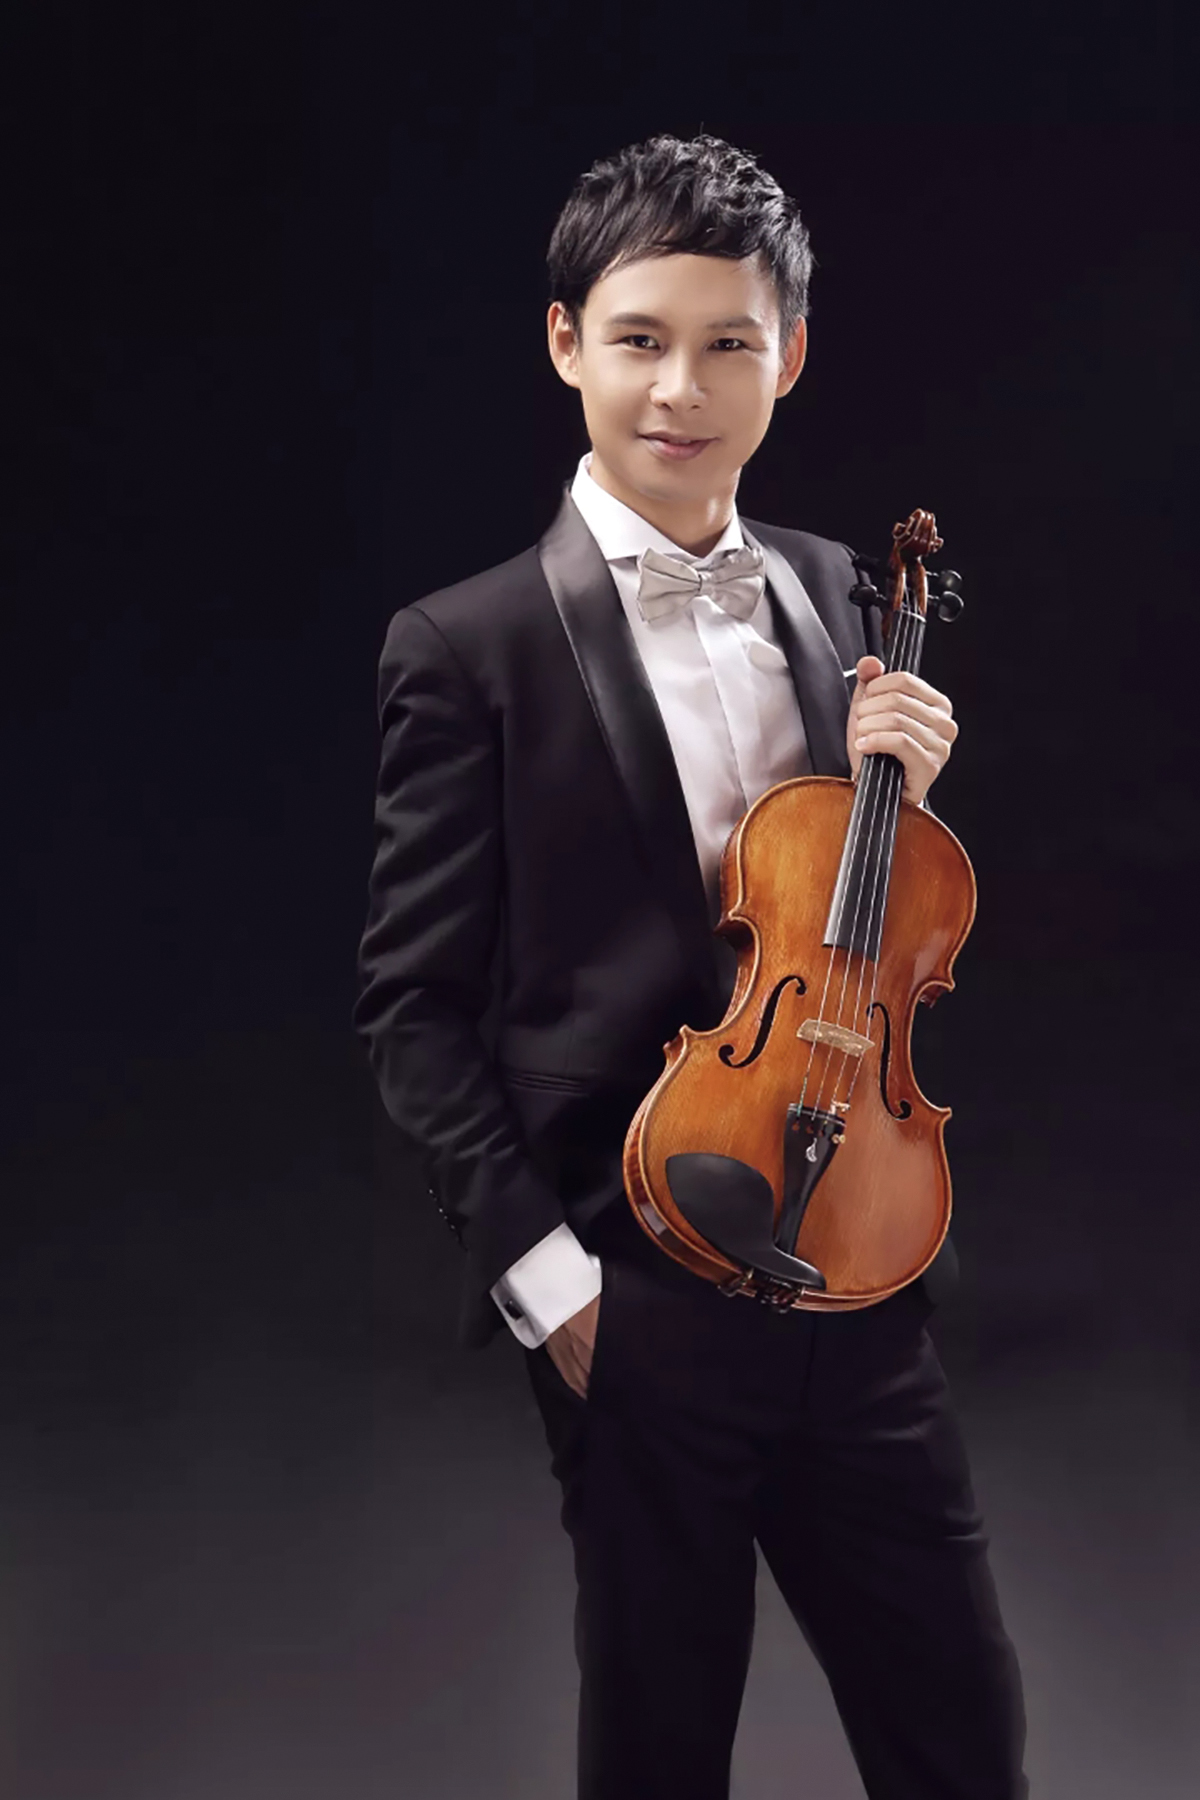 参演本场音乐会的中提琴手们,涵盖了音乐学院附中一年级到硕士研究生